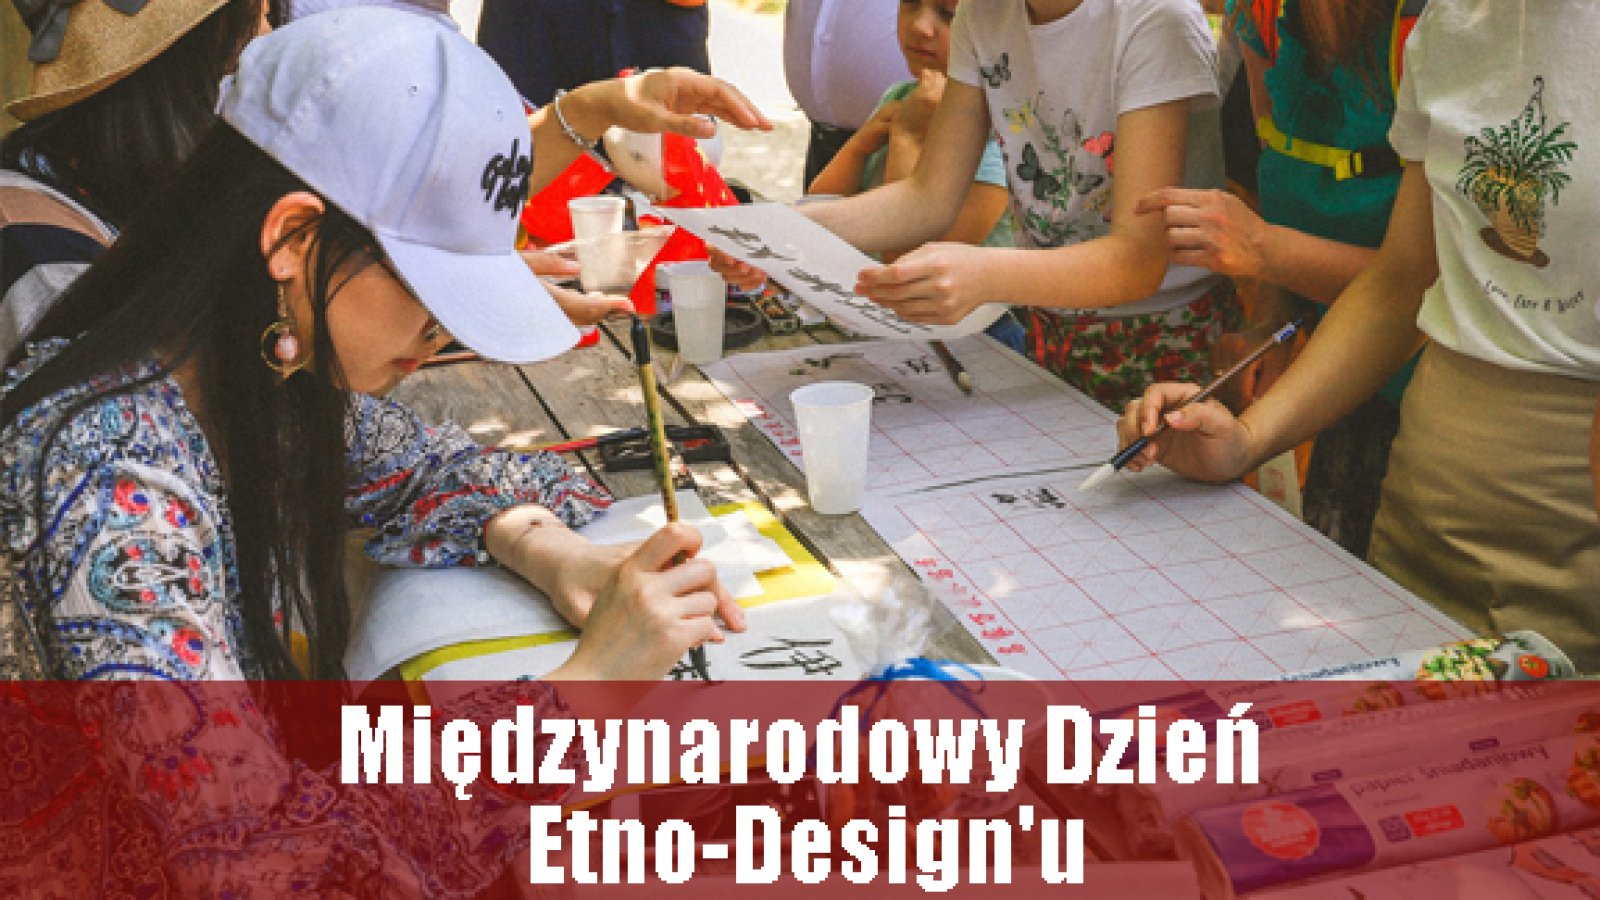 etno_design_pl